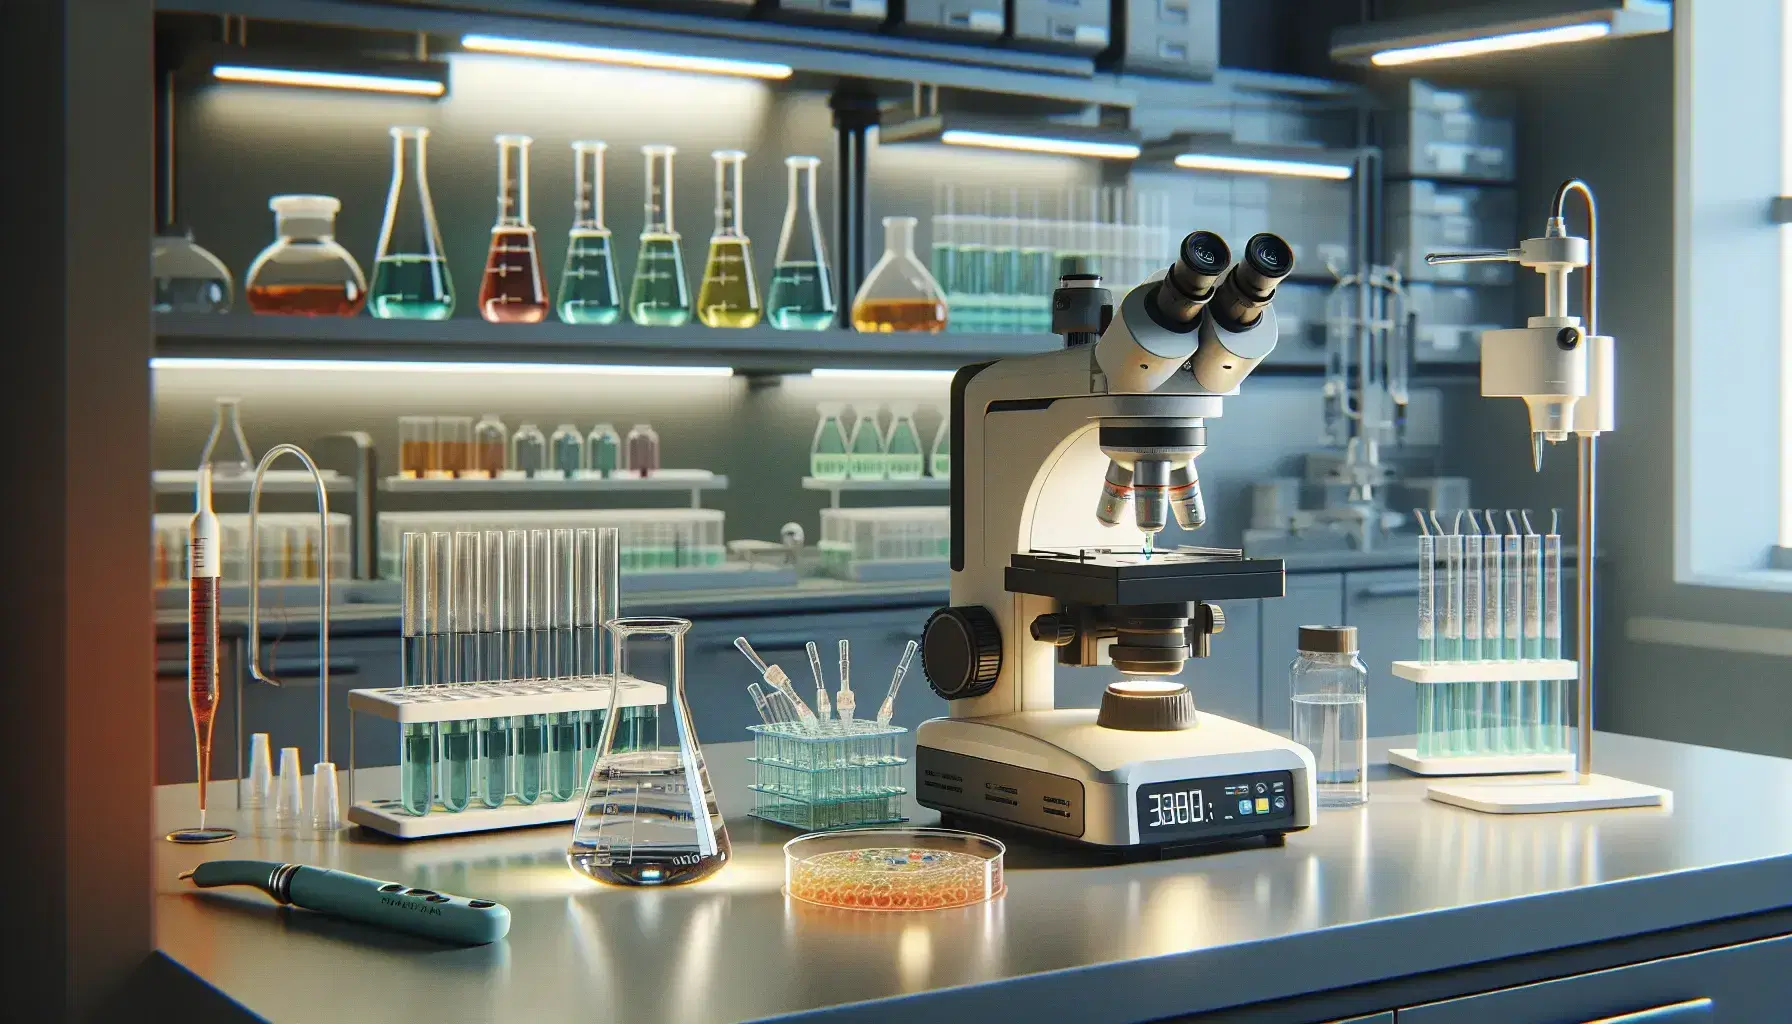 Laboratorio de biología molecular con microscopio electrónico, tubos de ensayo con líquidos de colores, pipeta automática y placas de Petri en una mesa de trabajo.